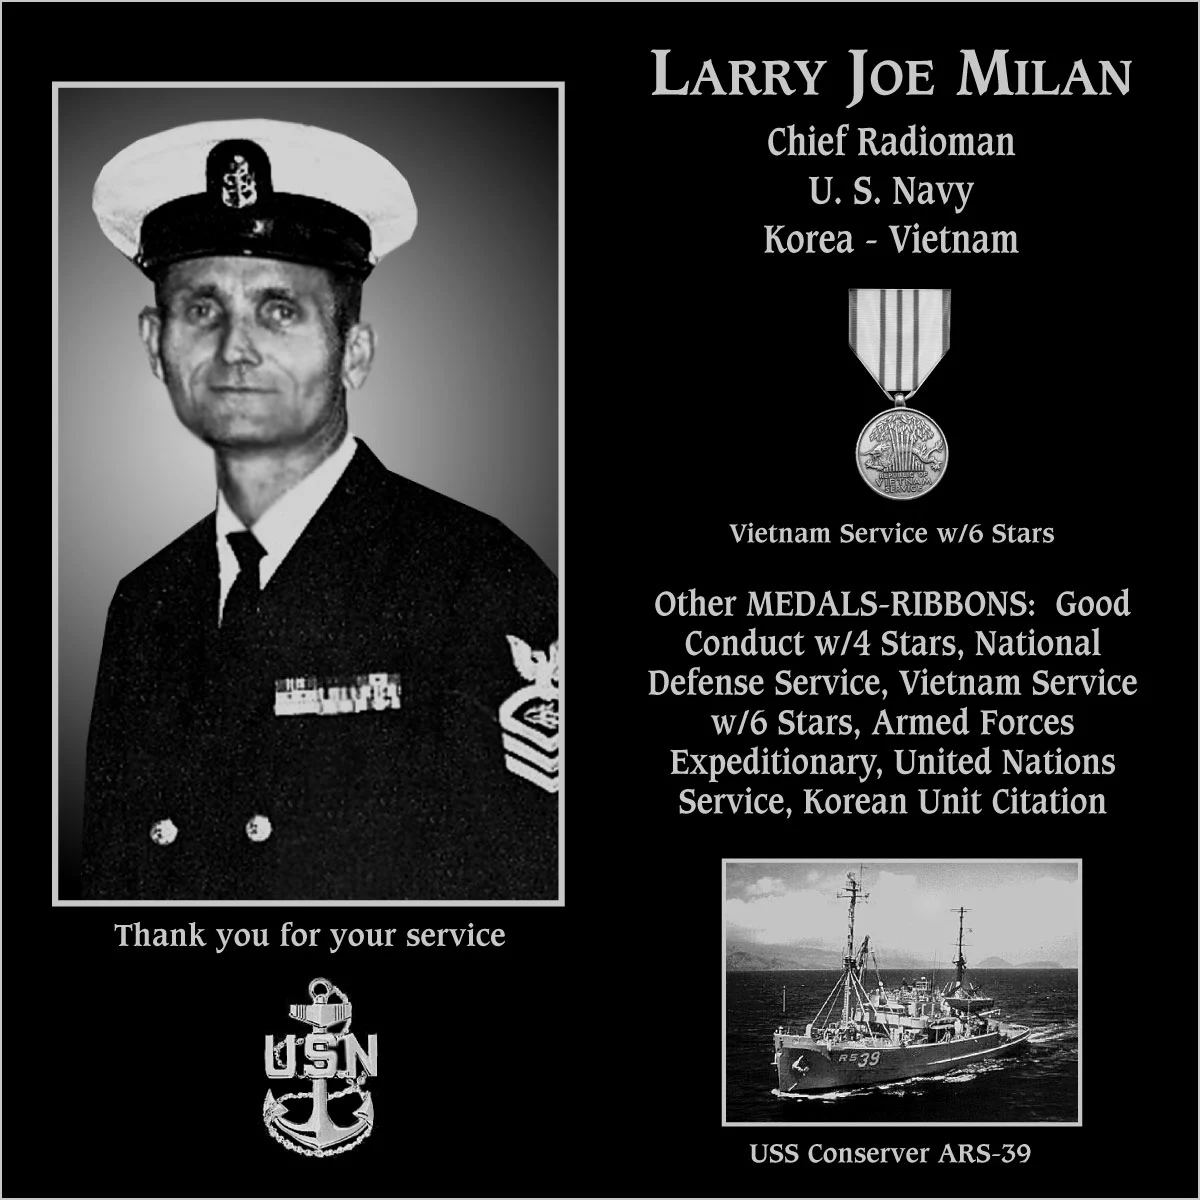 Larry Joe Milan